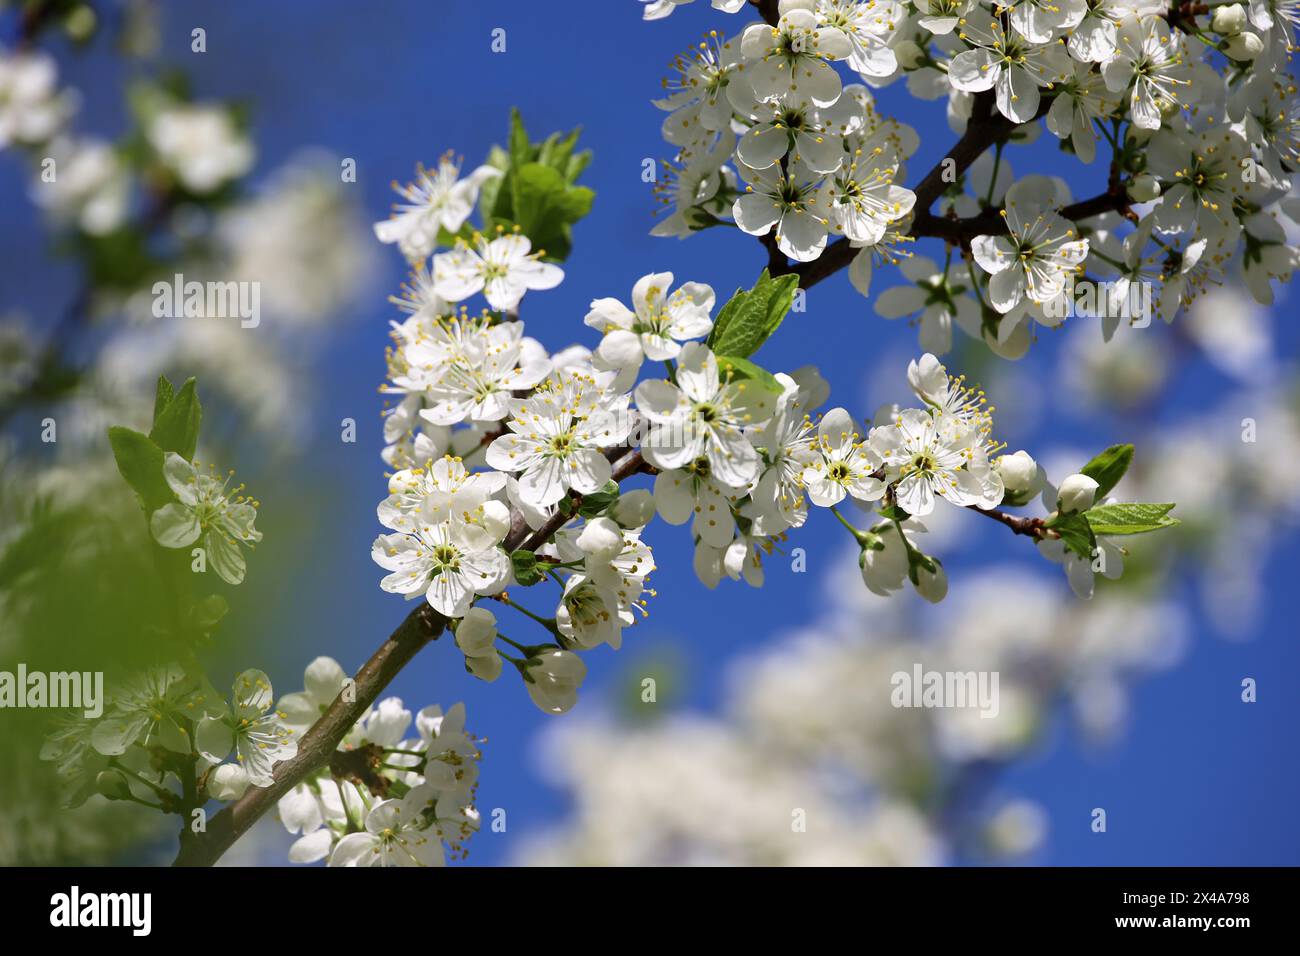 Kirschblüte im Frühlingsgarten auf blauem Himmel Hintergrund. Weiße Blumen und junge grüne Blätter auf einem Zweig Stockfoto